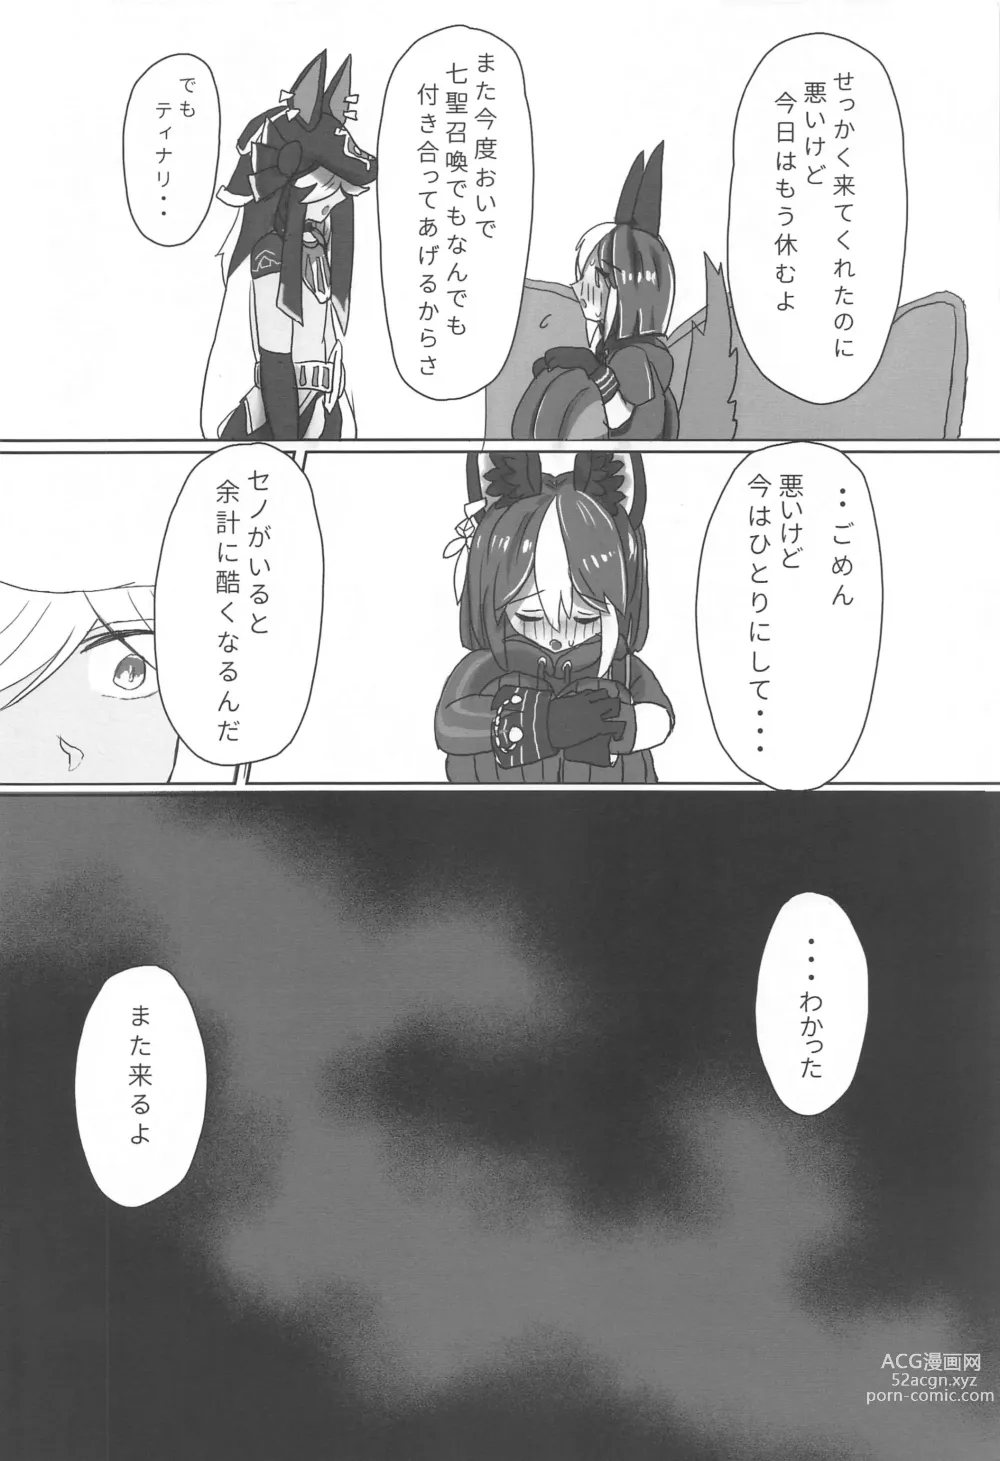 Page 3 of doujinshi Kimi ga Nozomu nara